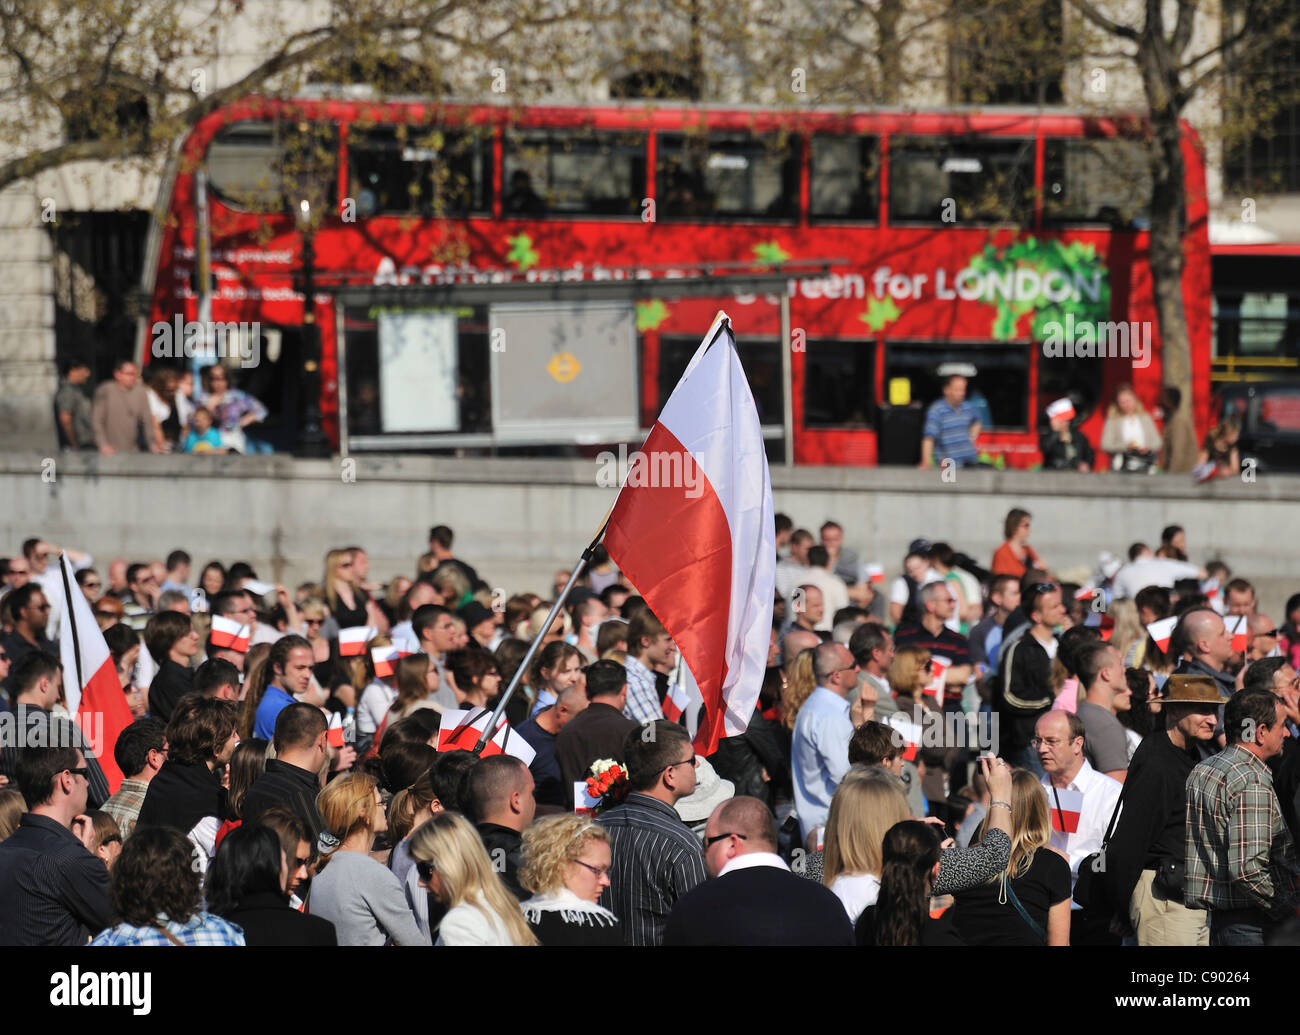 Las personas se reunieron para ver el funeral del presidente polaco Lech Kaczynski en pantallas de televisión, en abril de 2010, Trafalgar Square, Londres, Reino Unido. Foto de stock